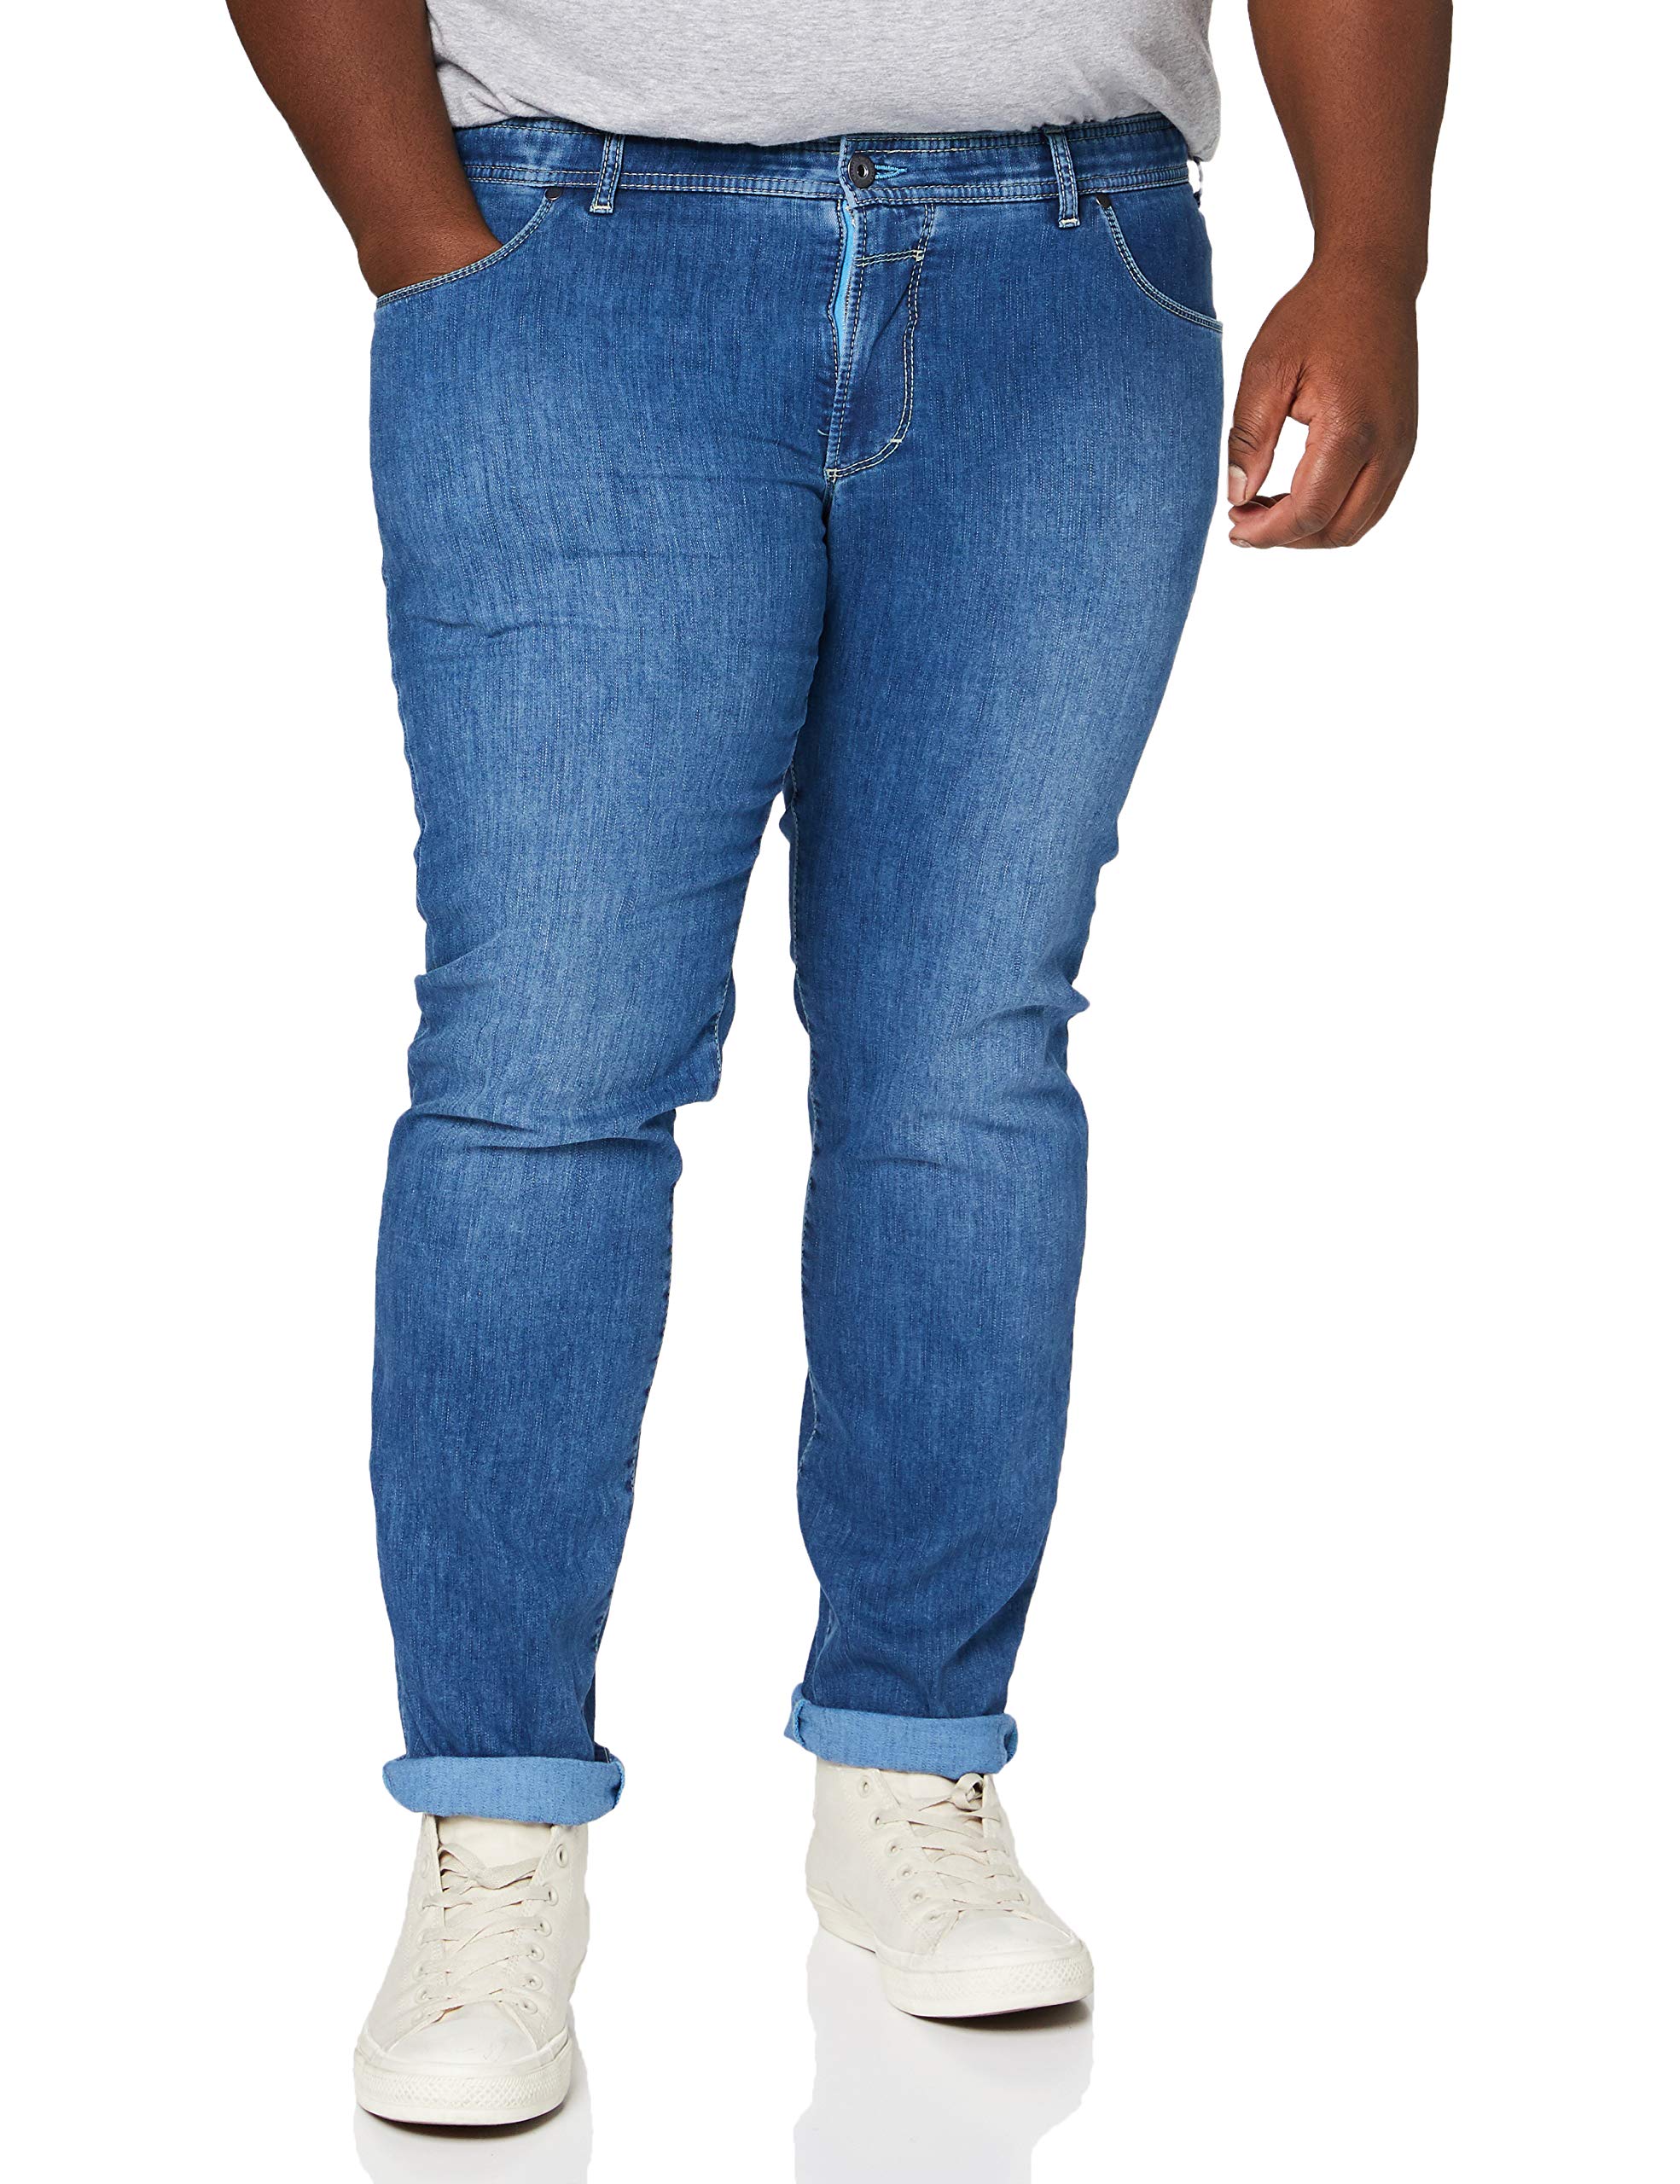 Eurex by Brax Herren Style Pep Tapered Fit Jeans, blau, 38W / 34L EU